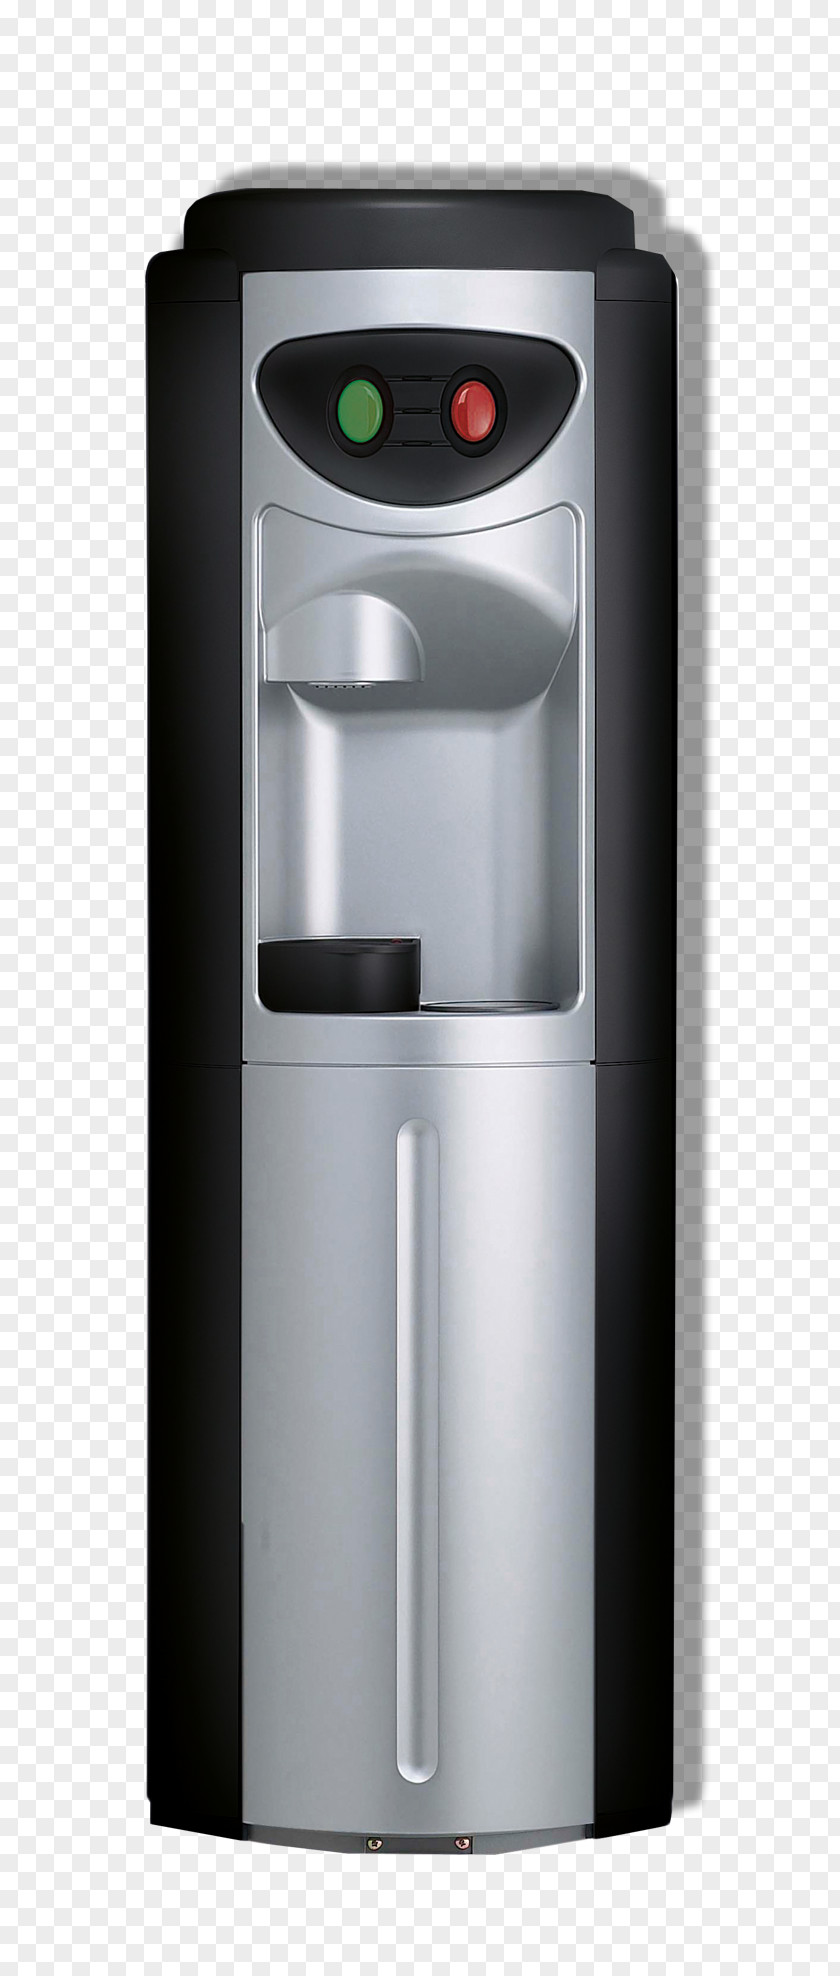 Water Cooler Coffeemaker Bottle PNG